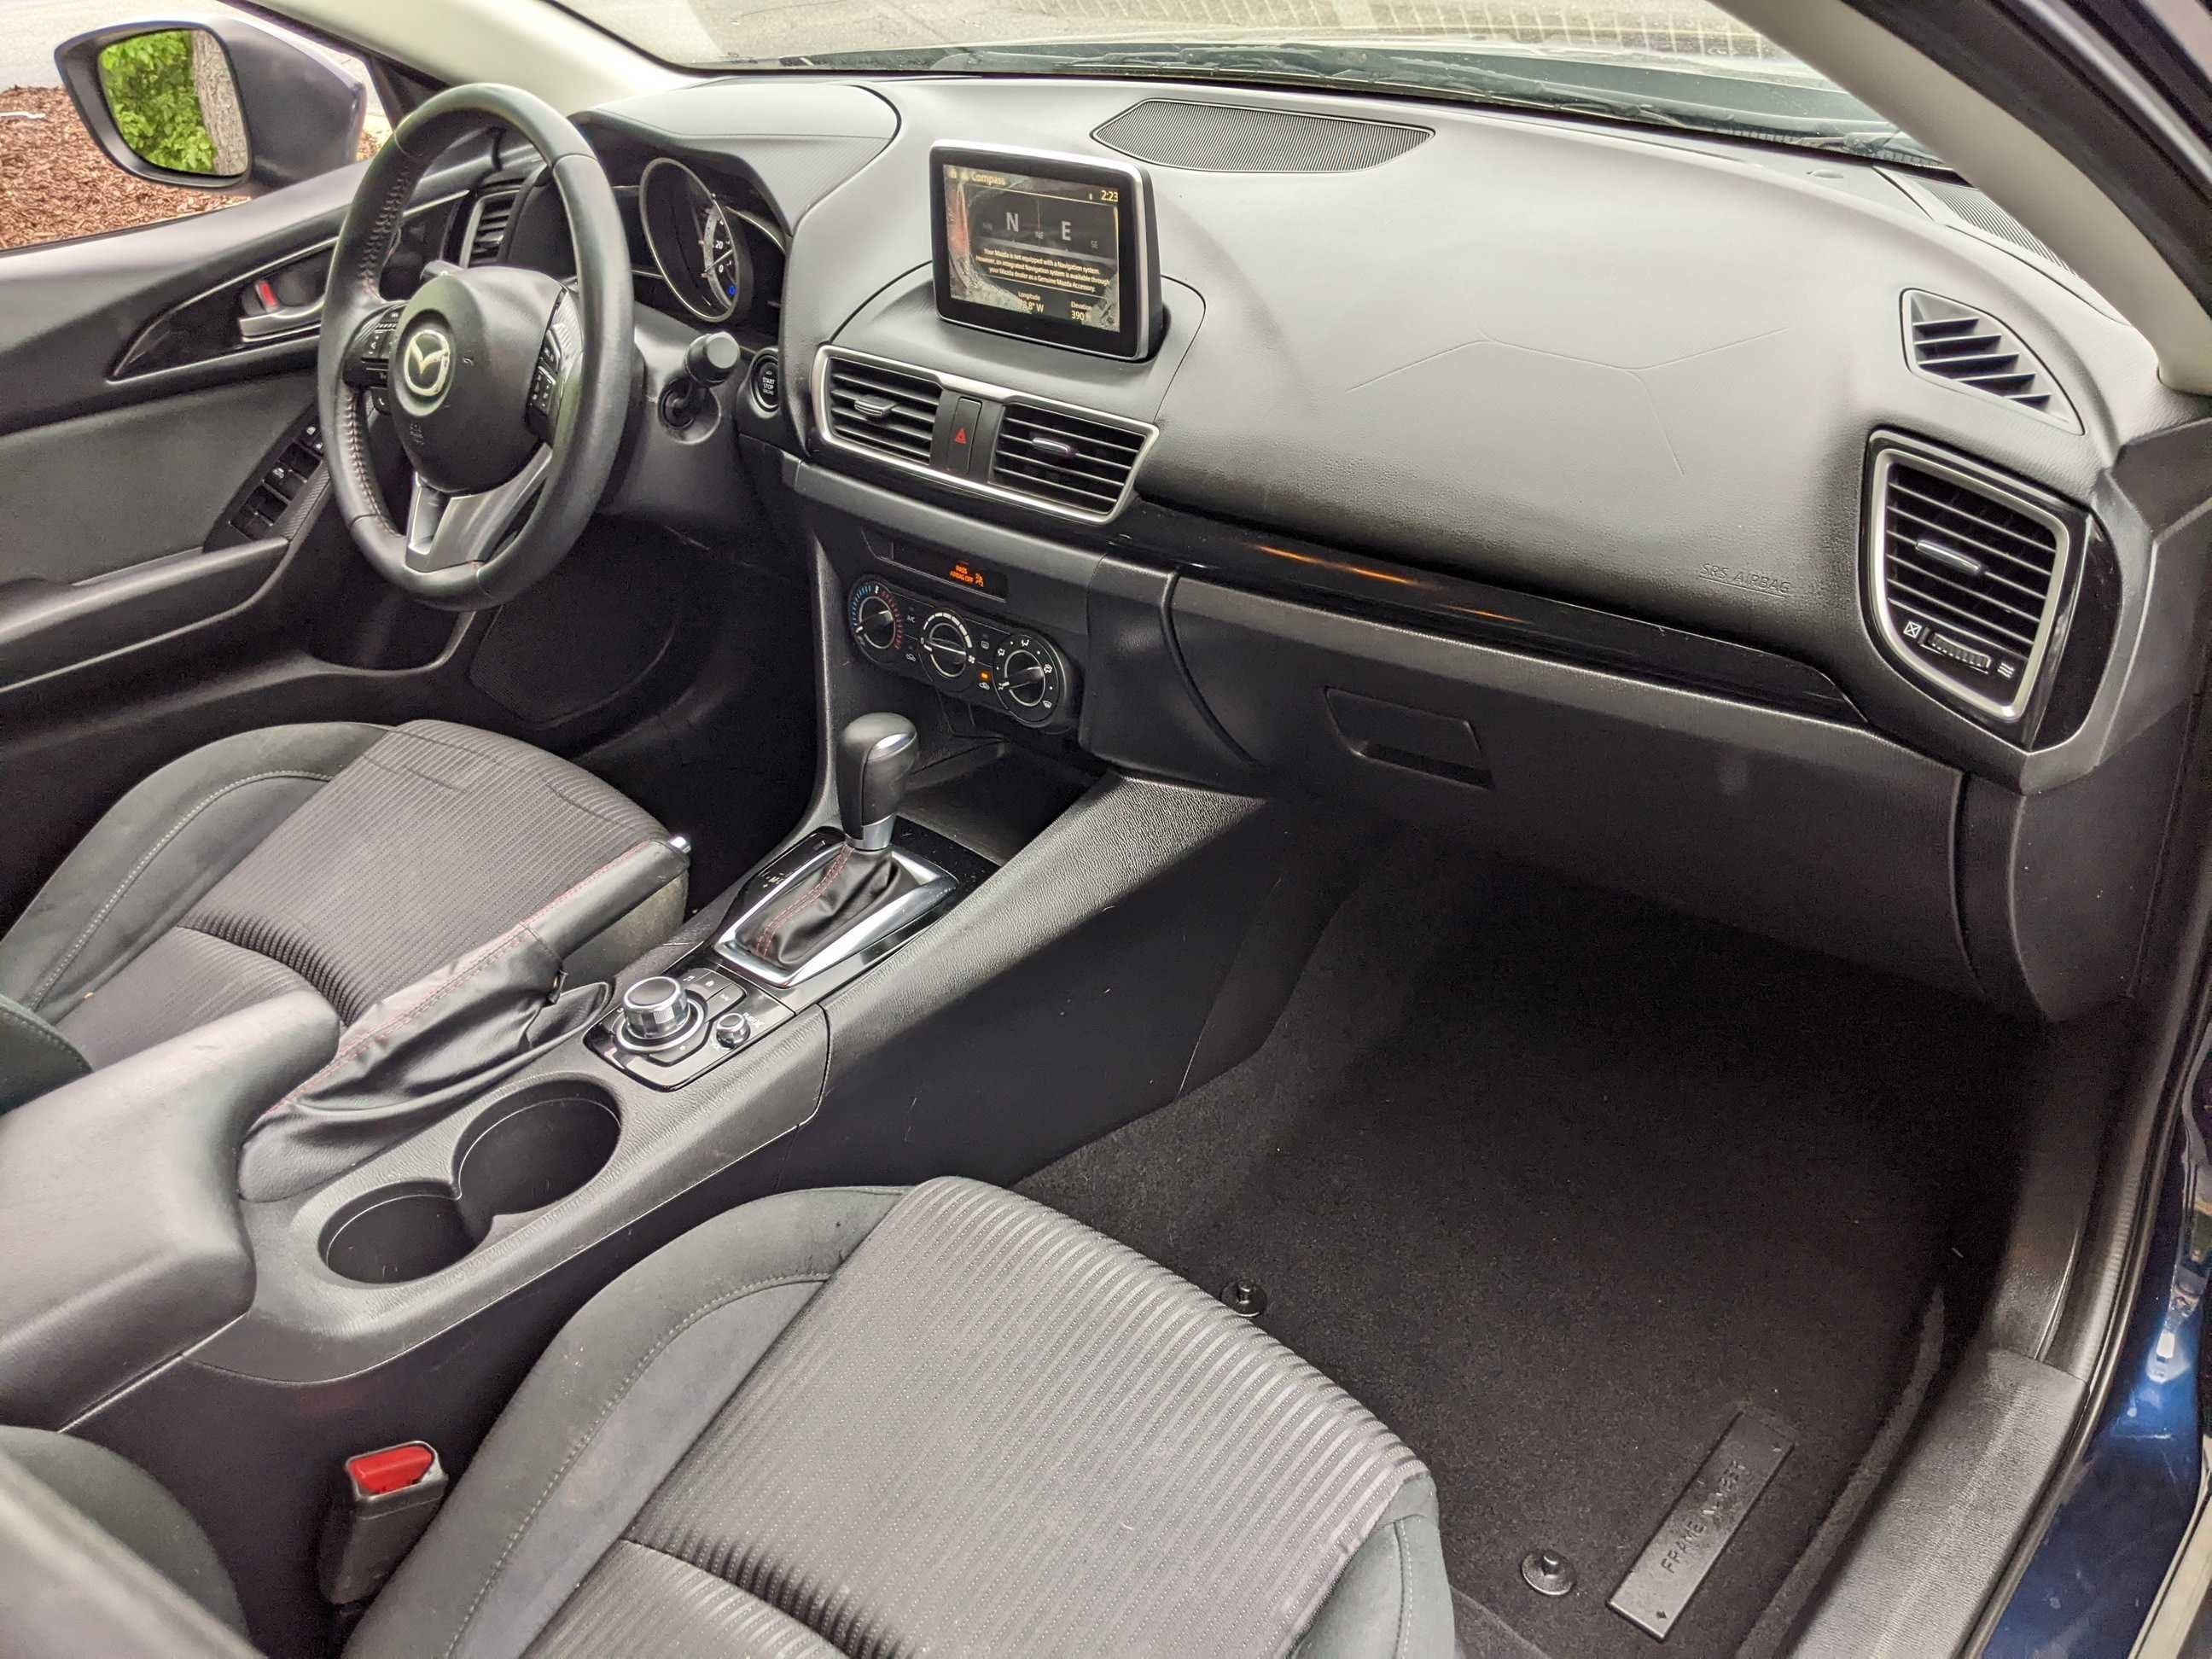 2015 Mazda Mazda3 i Touring